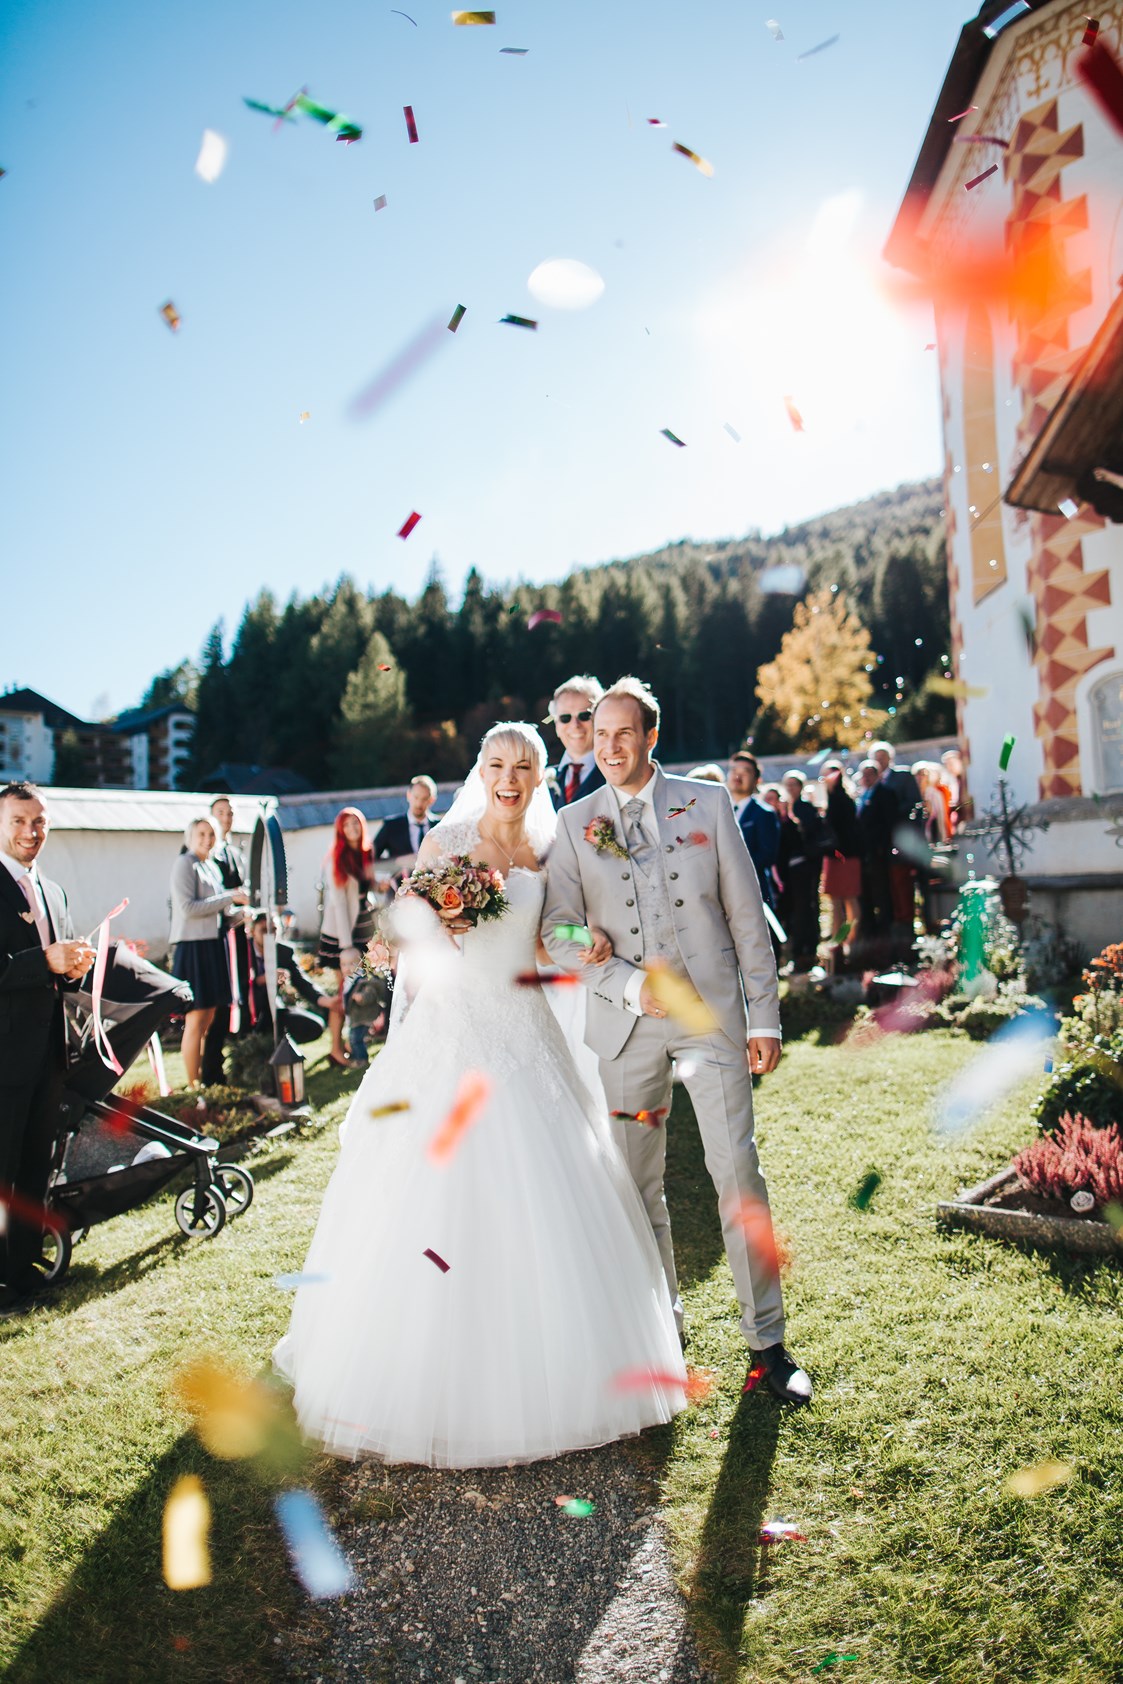 Hochzeitsfotograf: Mehr Konfetti bitte <3 - Katrin Solwold